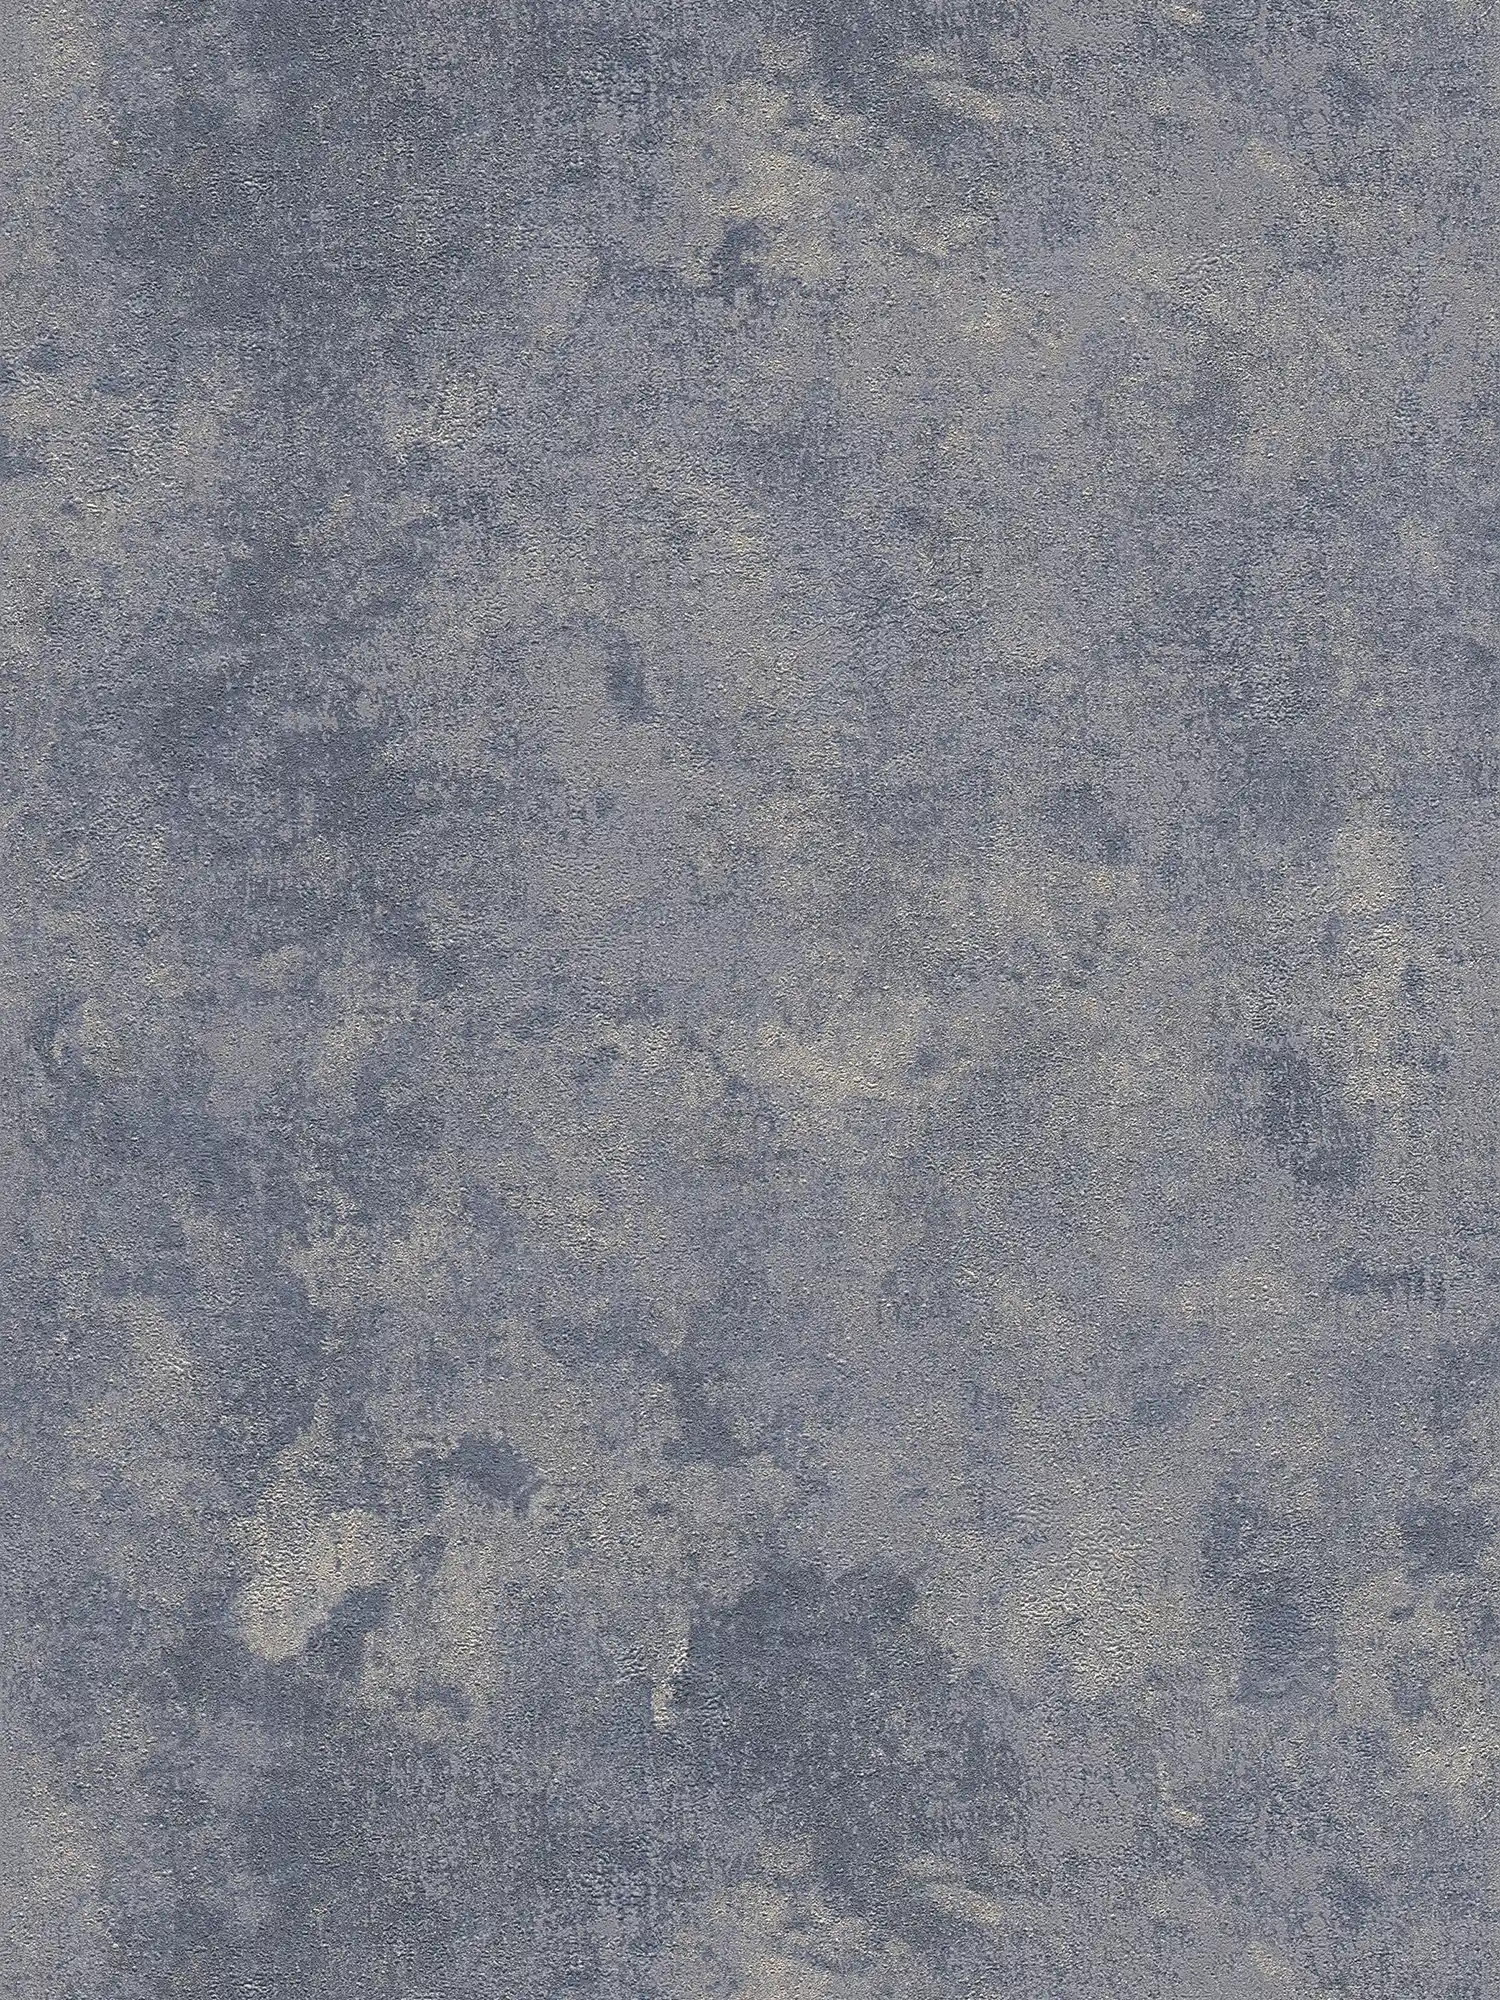 behang grove structuur & glanseffect - blauw, zilver, grijs
